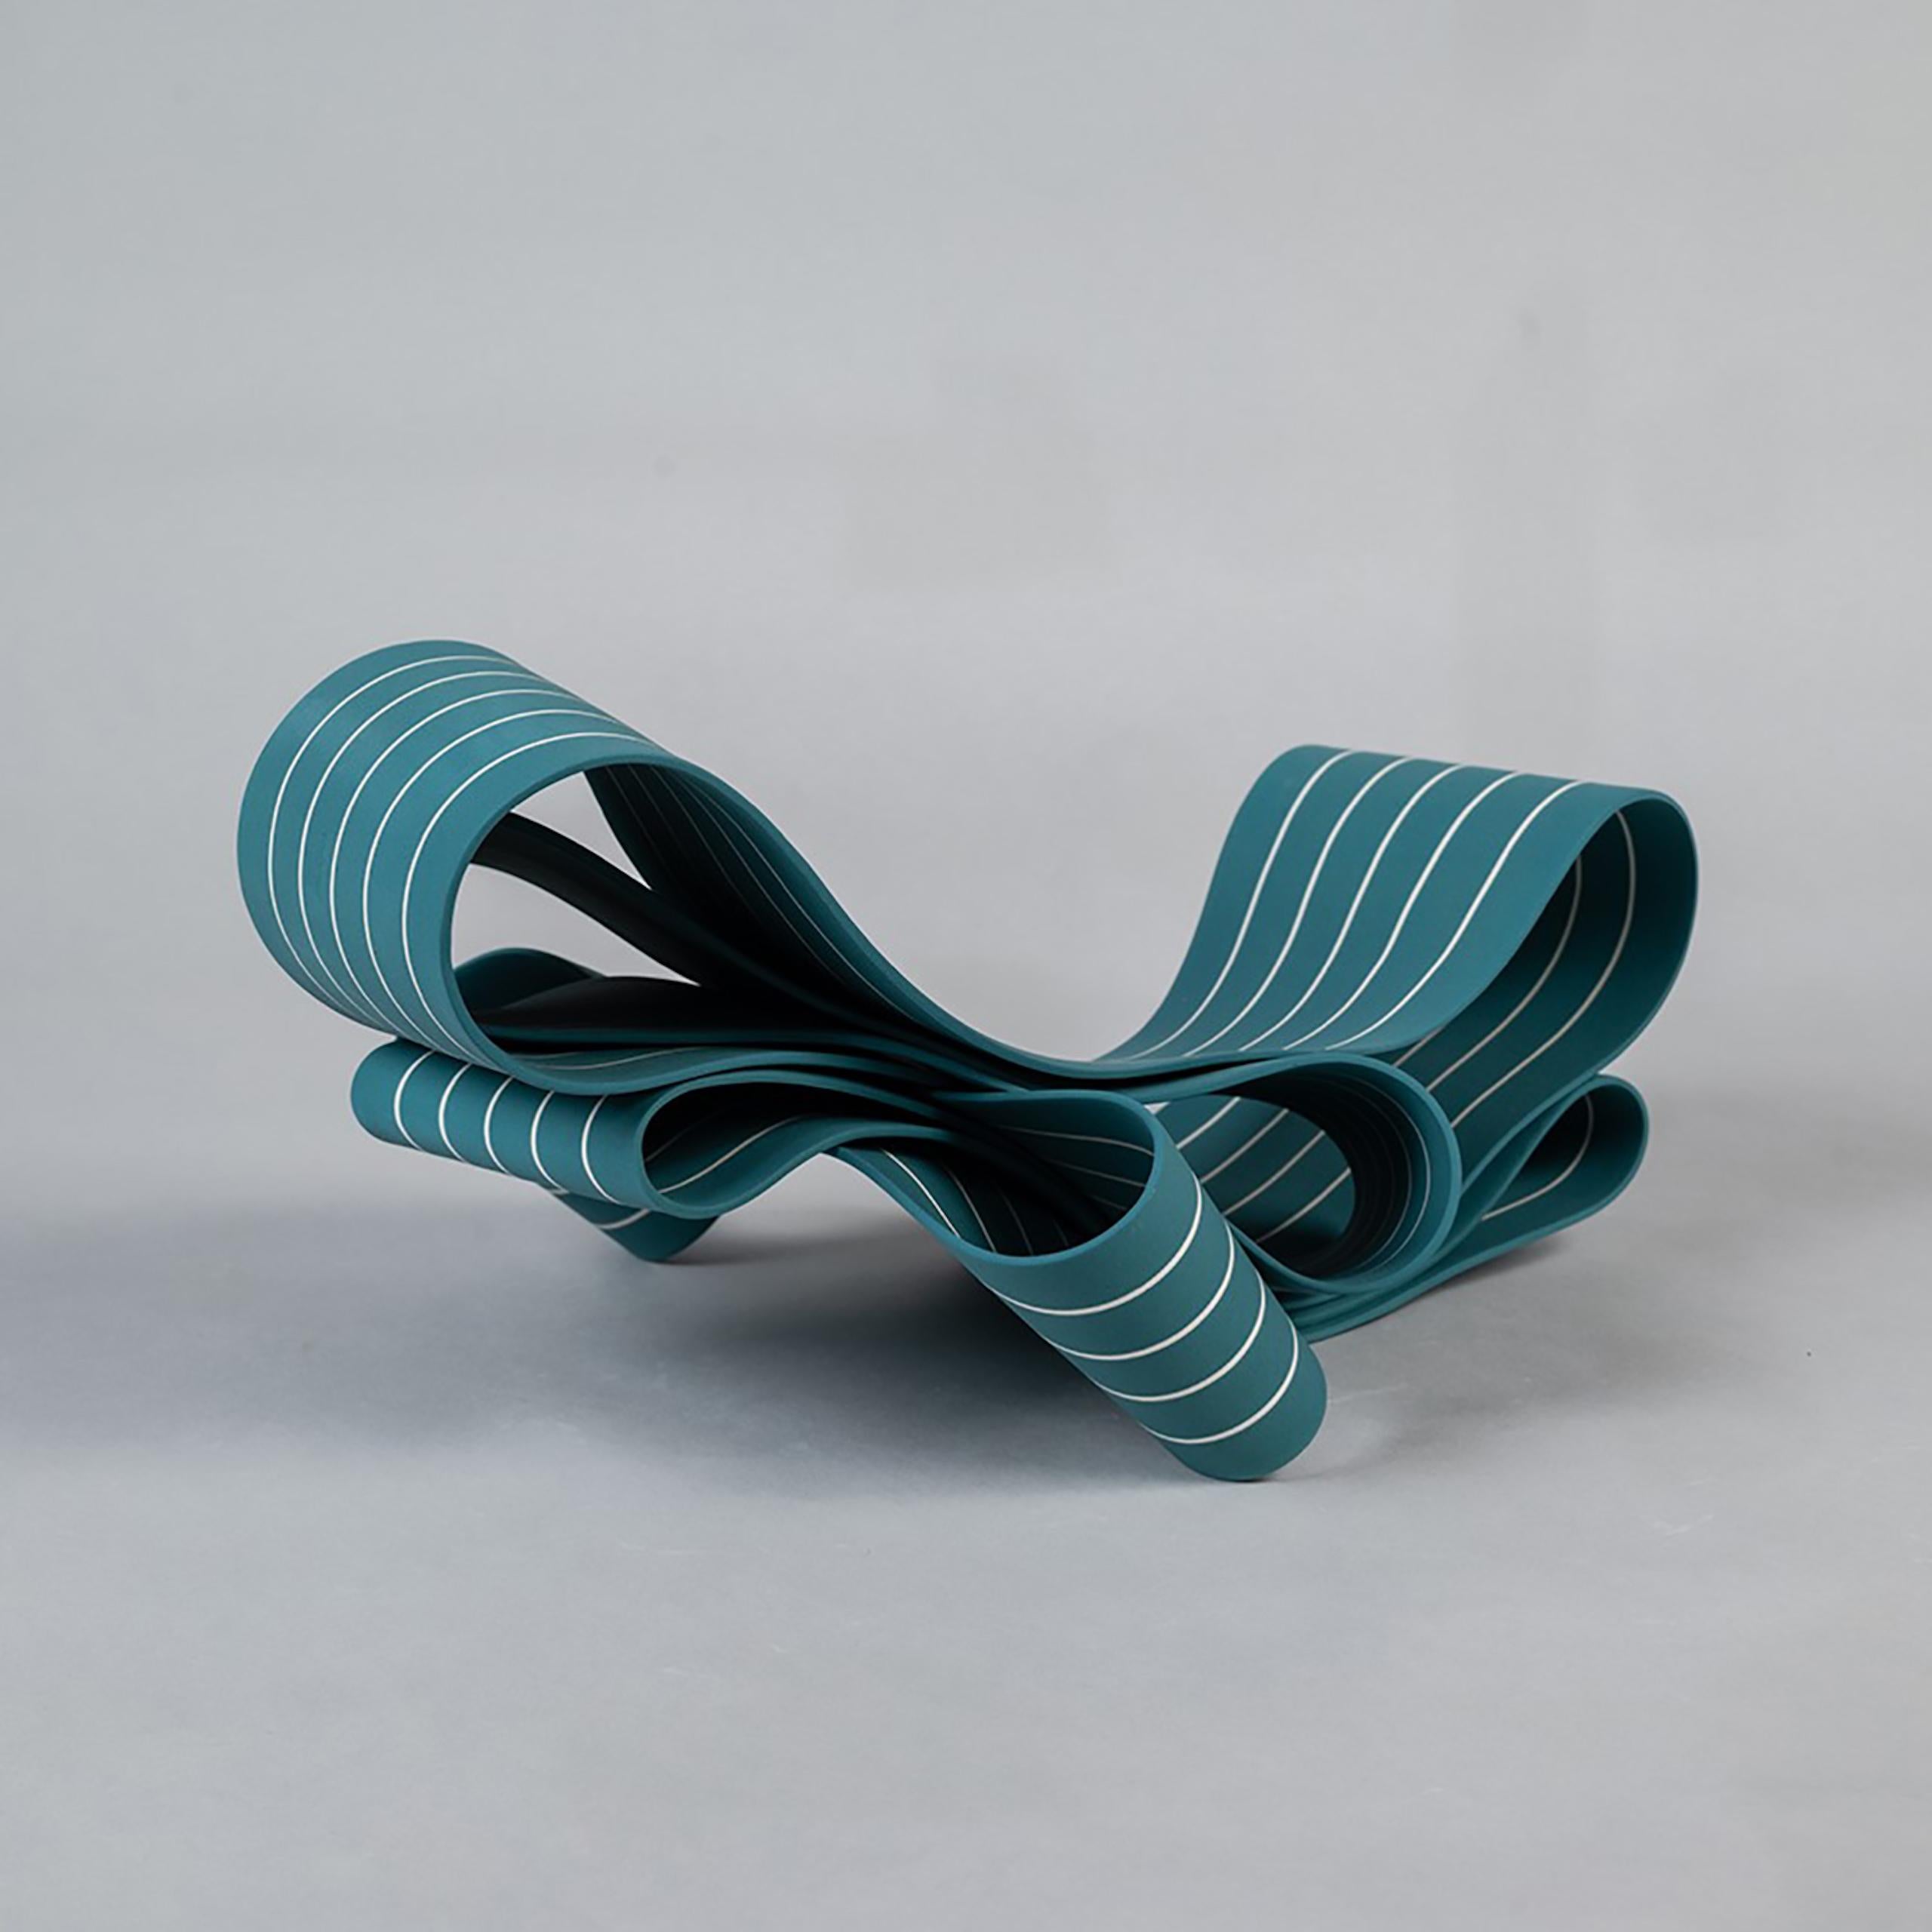 Entrapped 2 by Simcha Even-Chen - Porcelain sculpture, blue, motion For Sale 3